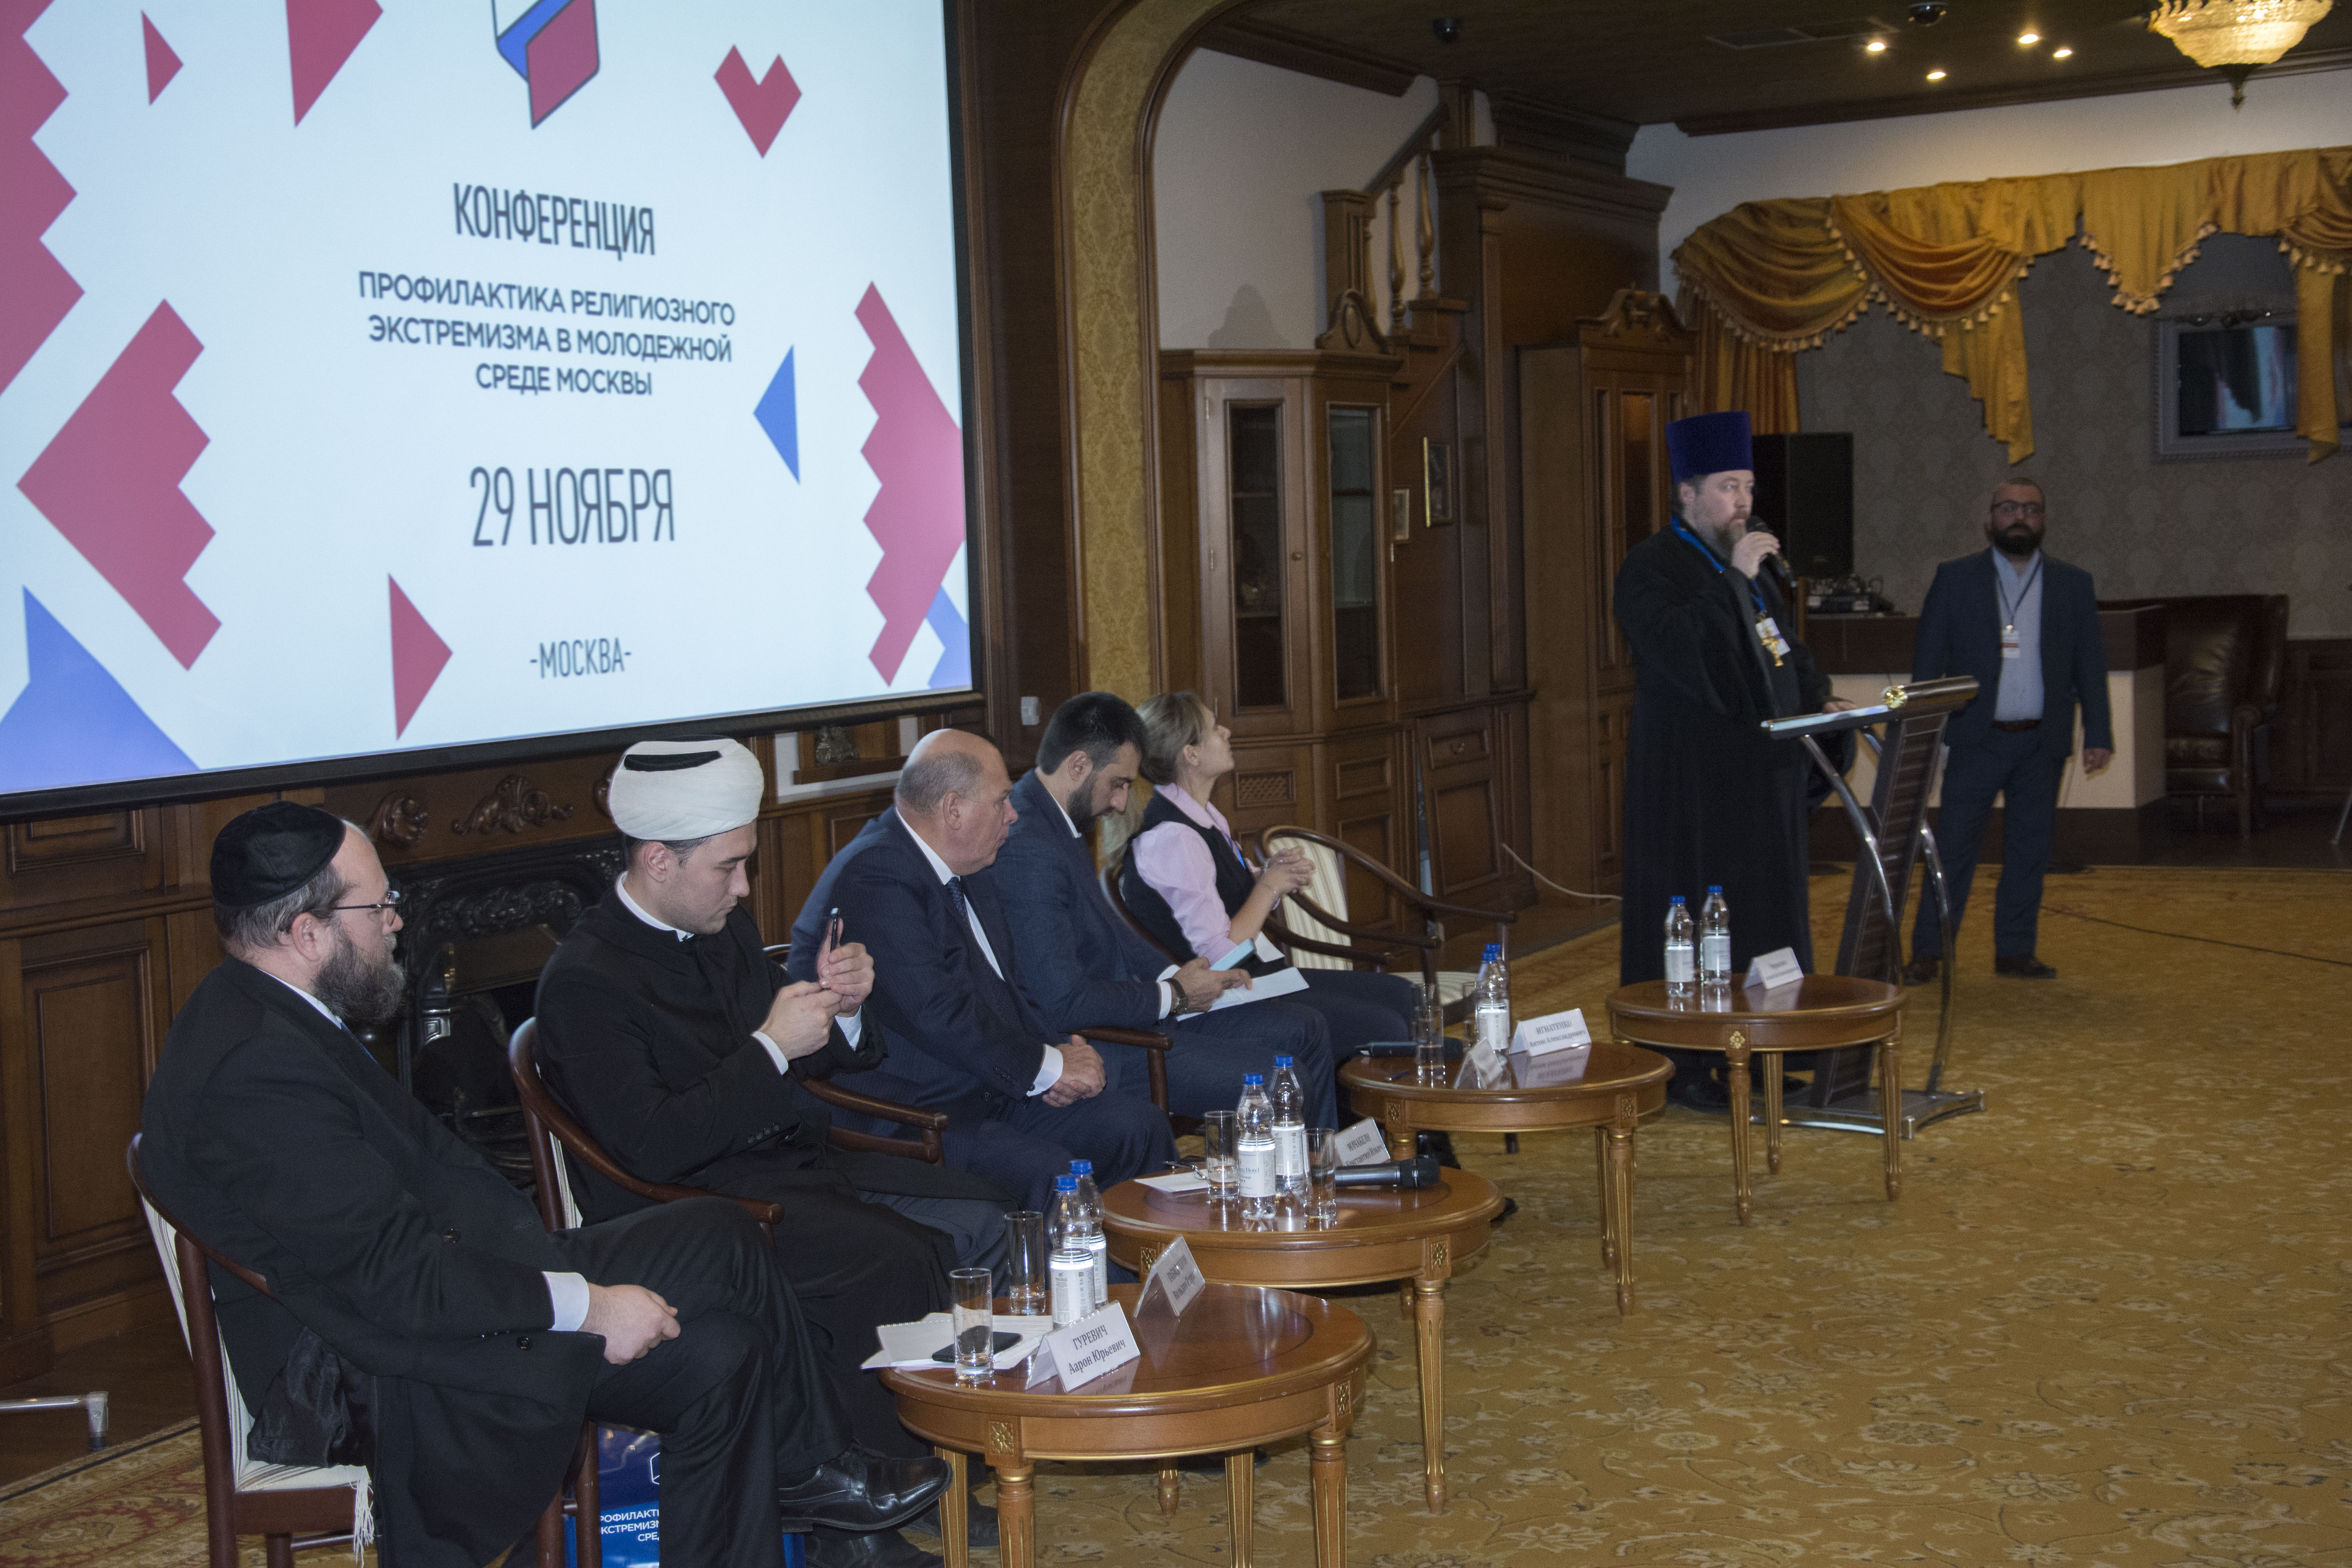 На Конференции «Профилактика религиозного экстремизма в молодежной среде Москвы» выступили представители религиозных организаций